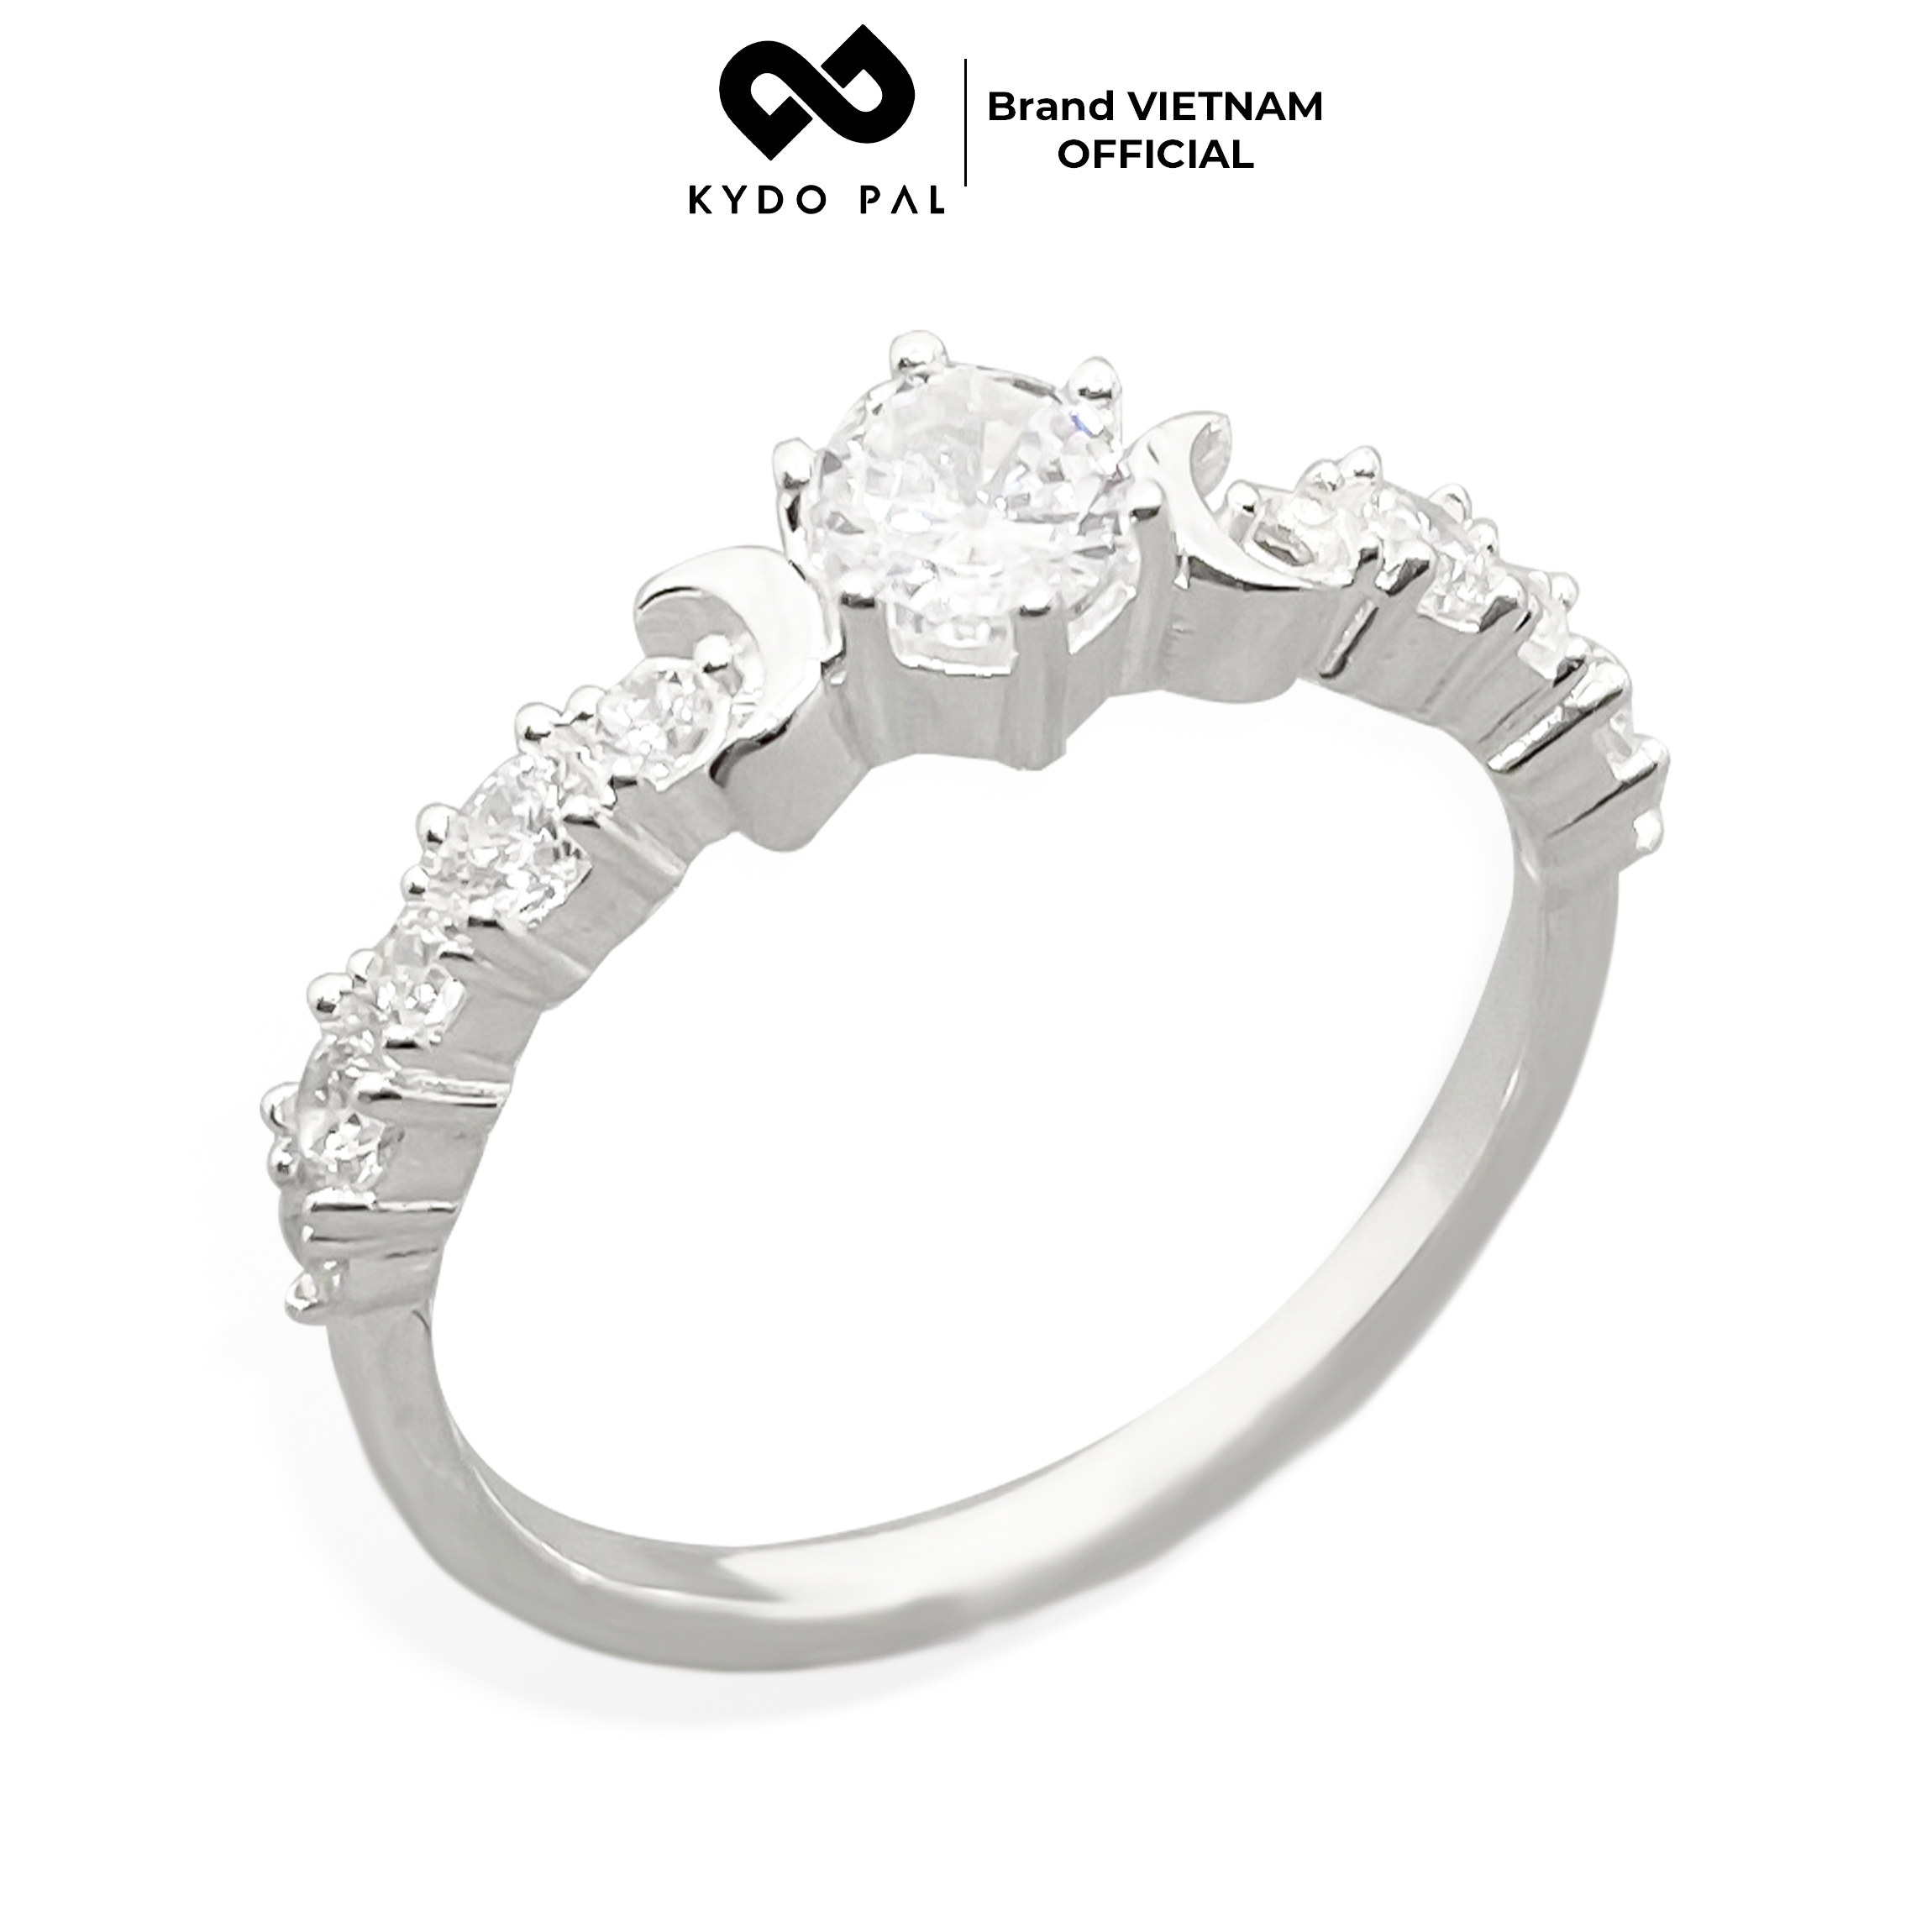 Nhẫn bạc nữ 925 KYDOPAL trang sức đính đá cao cấp sang chảnh - 9N13 thumbnail